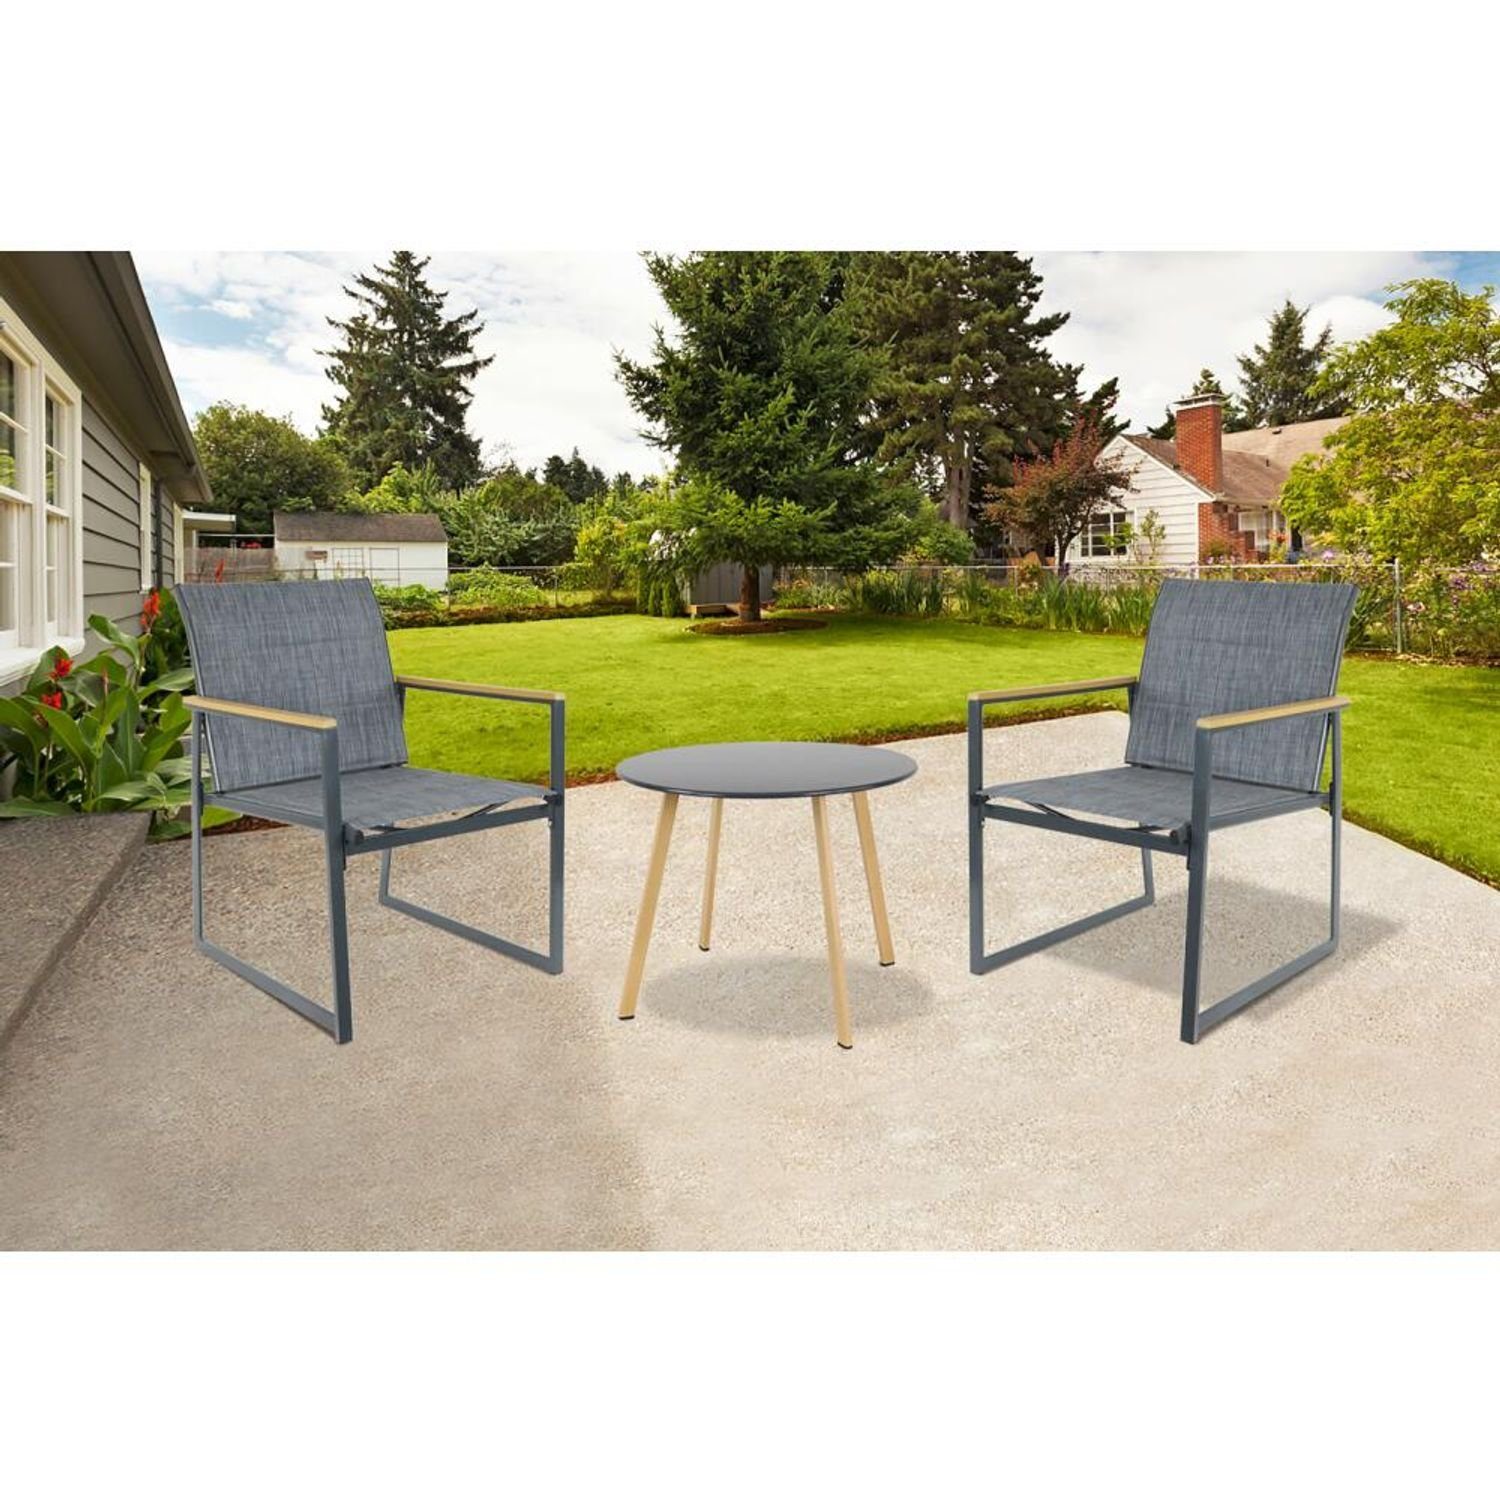 BURI Gartensessel Outdoor Sessel Metall Terrassen Hochlehner Garten Sitzen Stuhl Stühle